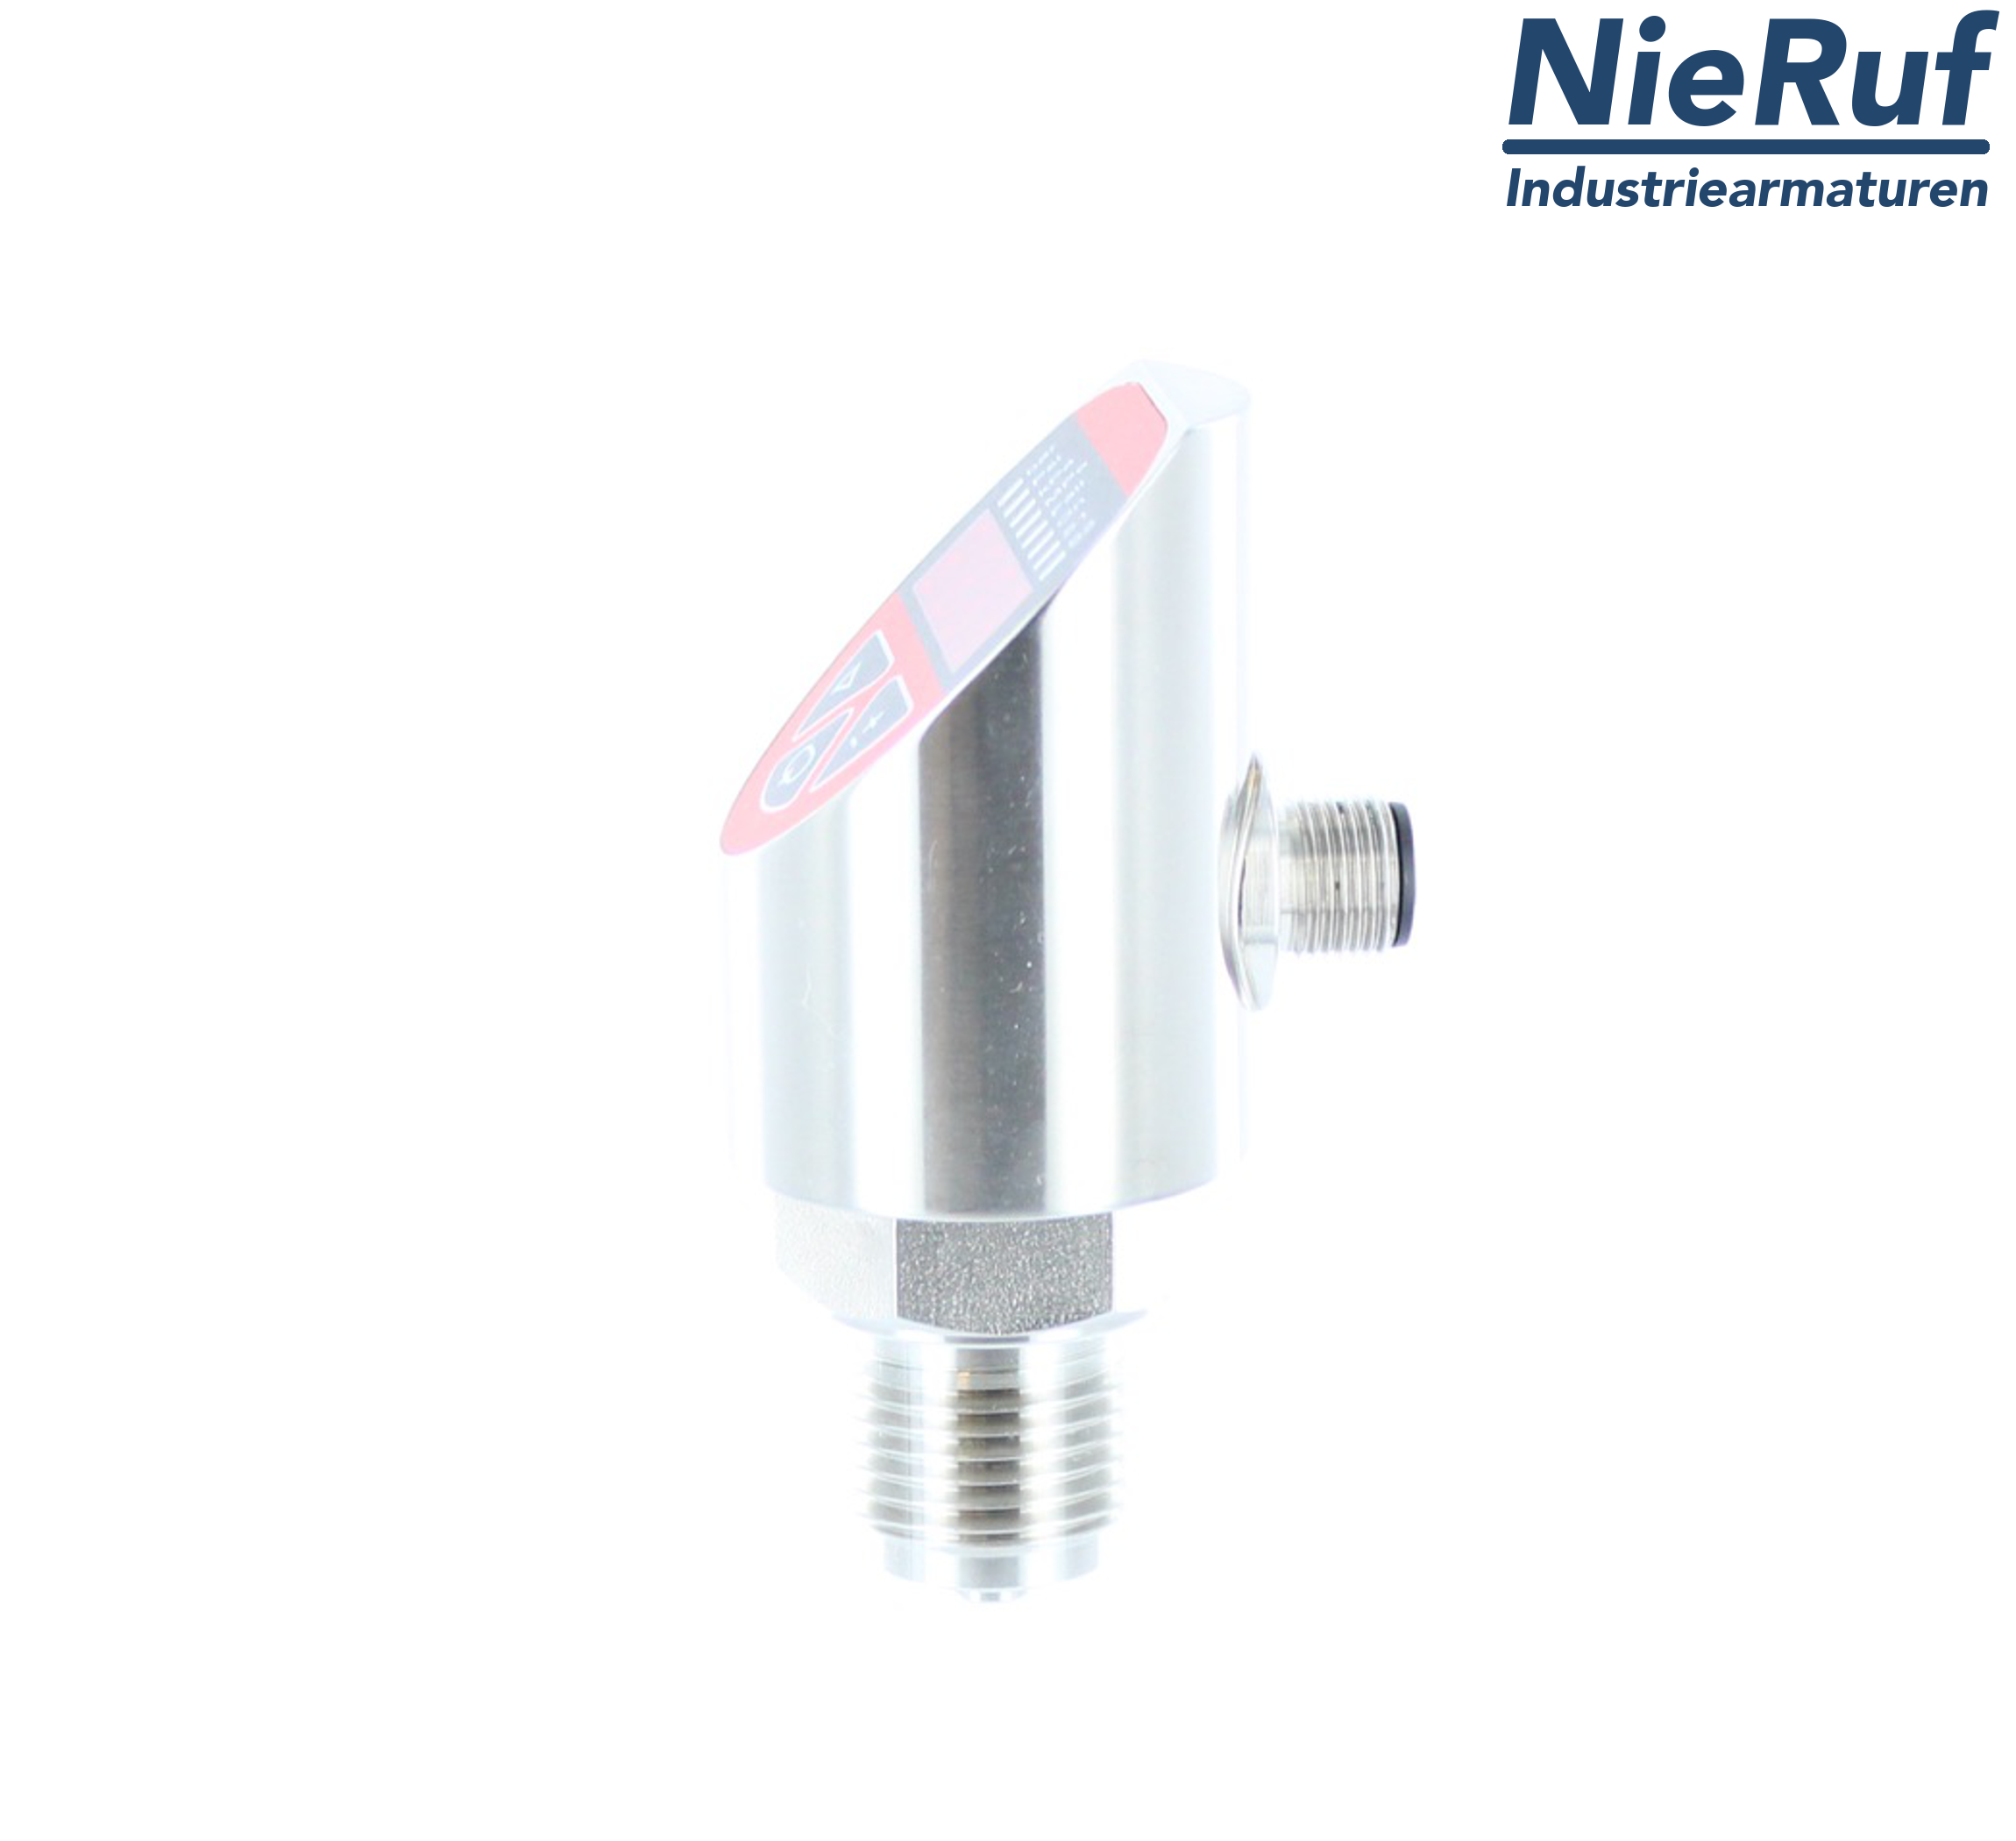 digital pressure sensor G 1/2" B IB 5-wire: 2xPNP, 1x4 - 20mA FPM 0,0 - 600,0 bar